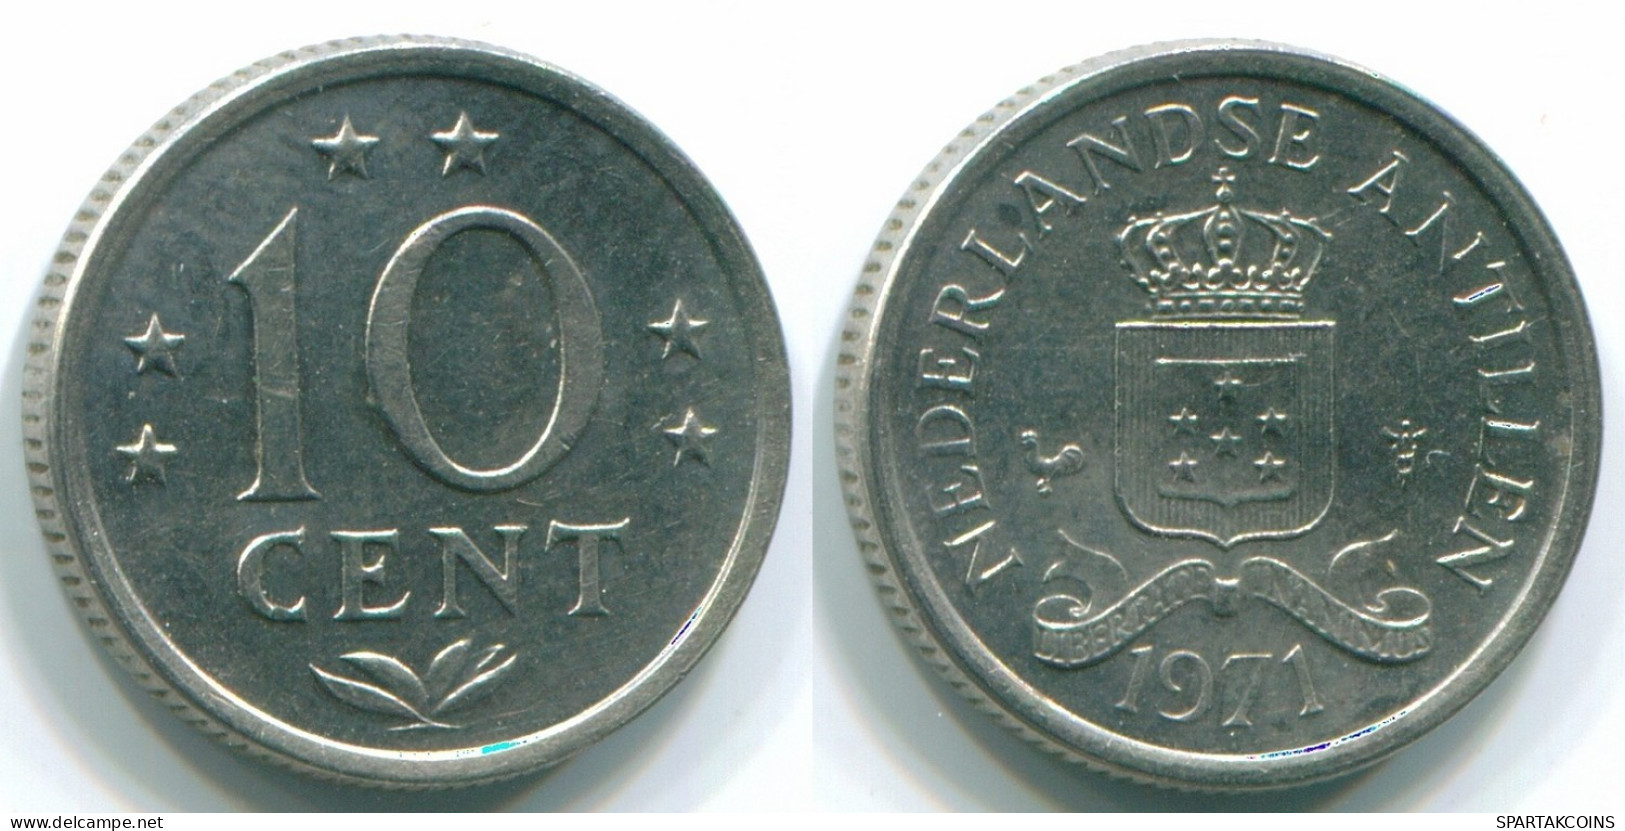 10 CENTS 1971 NIEDERLÄNDISCHE ANTILLEN Nickel Koloniale Münze #S13453.D.A - Antilles Néerlandaises